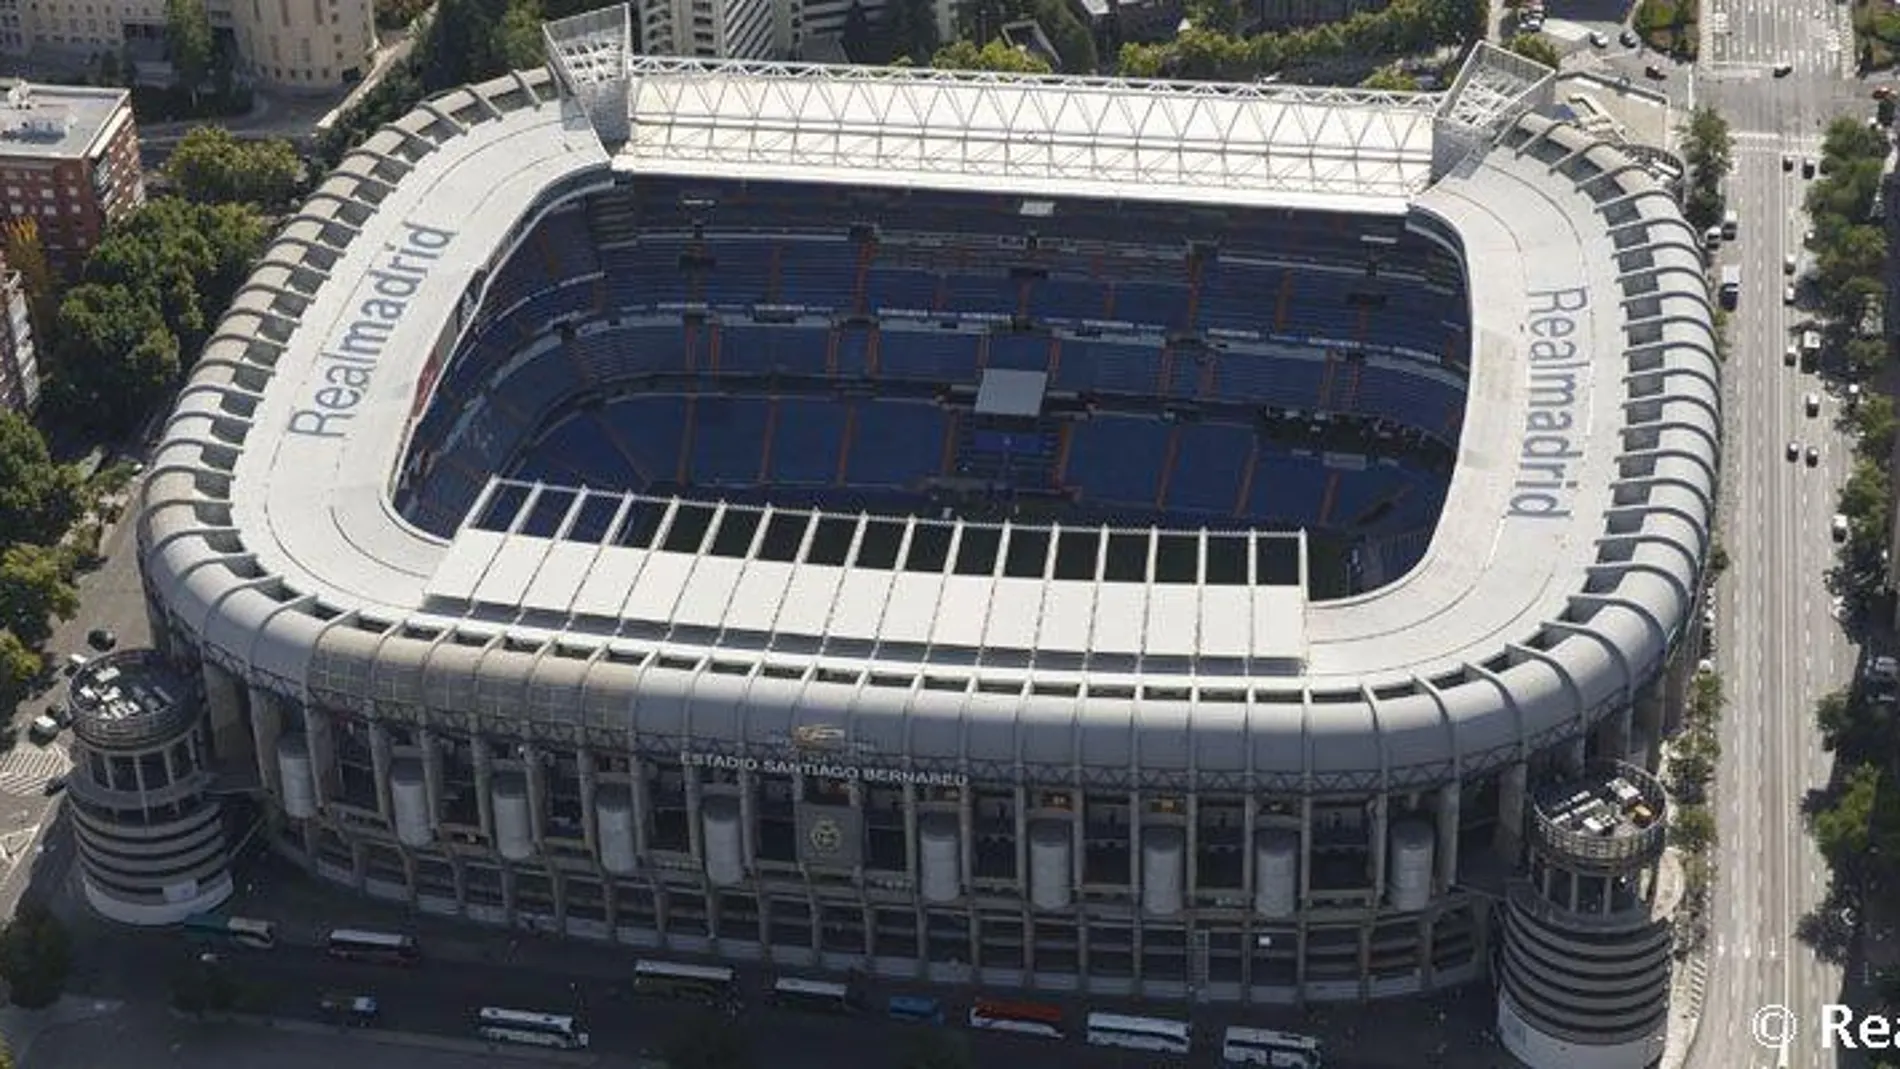 Plan especial en el Bernabéu para que la entrada al estadio no se vea afectada por los trabajos de remodelación